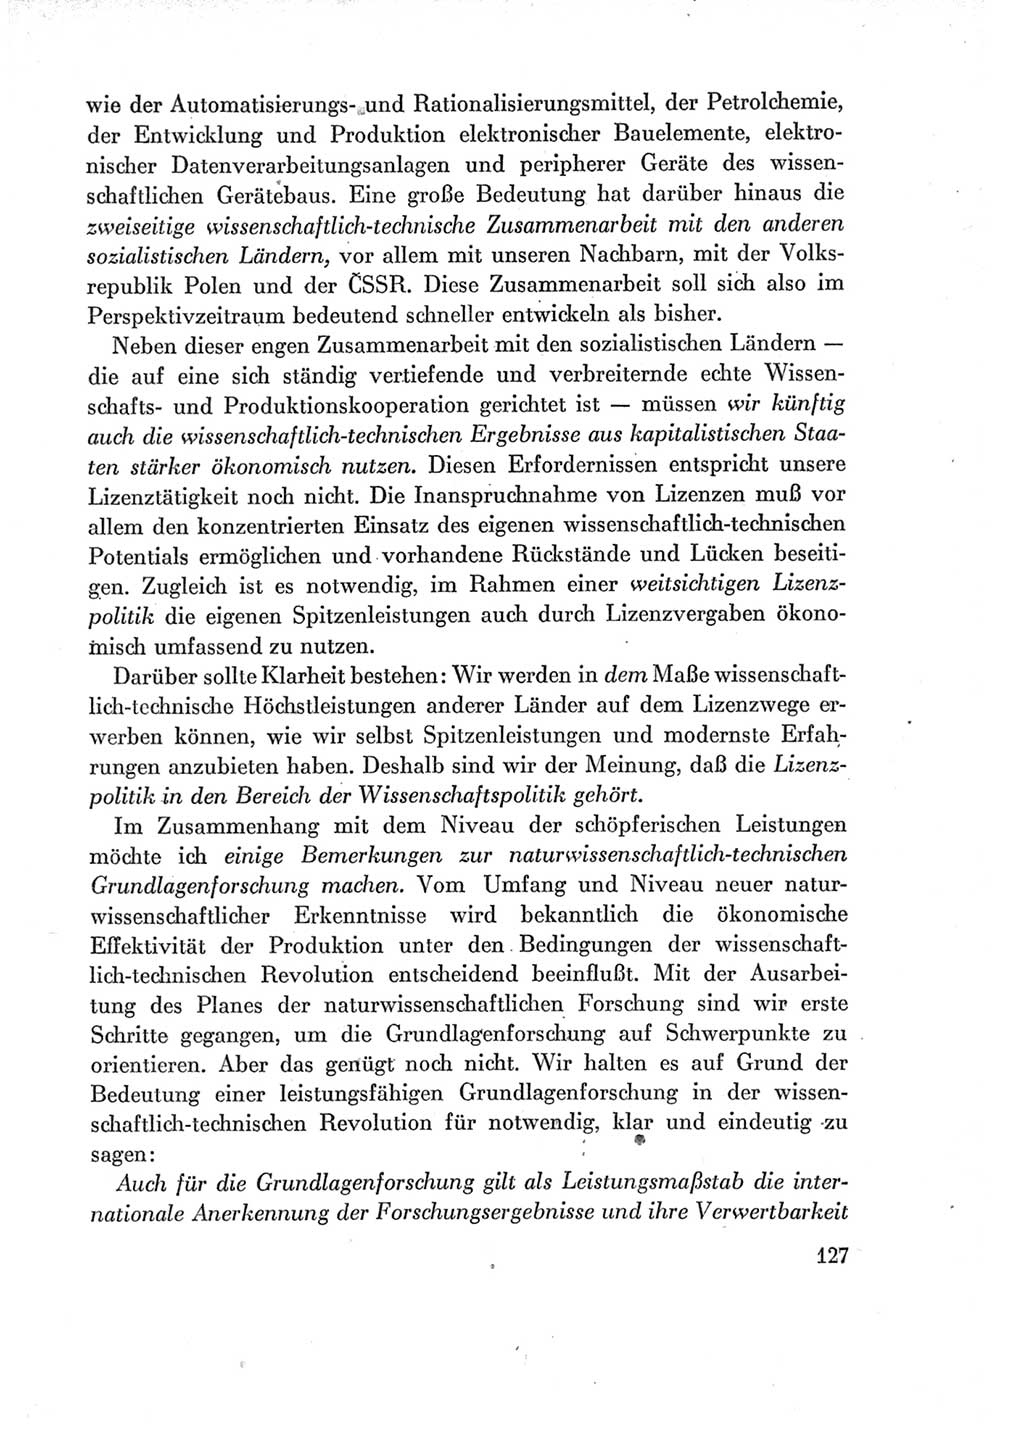 Protokoll der Verhandlungen des Ⅶ. Parteitages der Sozialistischen Einheitspartei Deutschlands (SED) [Deutsche Demokratische Republik (DDR)] 1967, Band Ⅰ, Seite 127 (Prot. Verh. Ⅶ. PT SED DDR 1967, Bd. Ⅰ, S. 127)